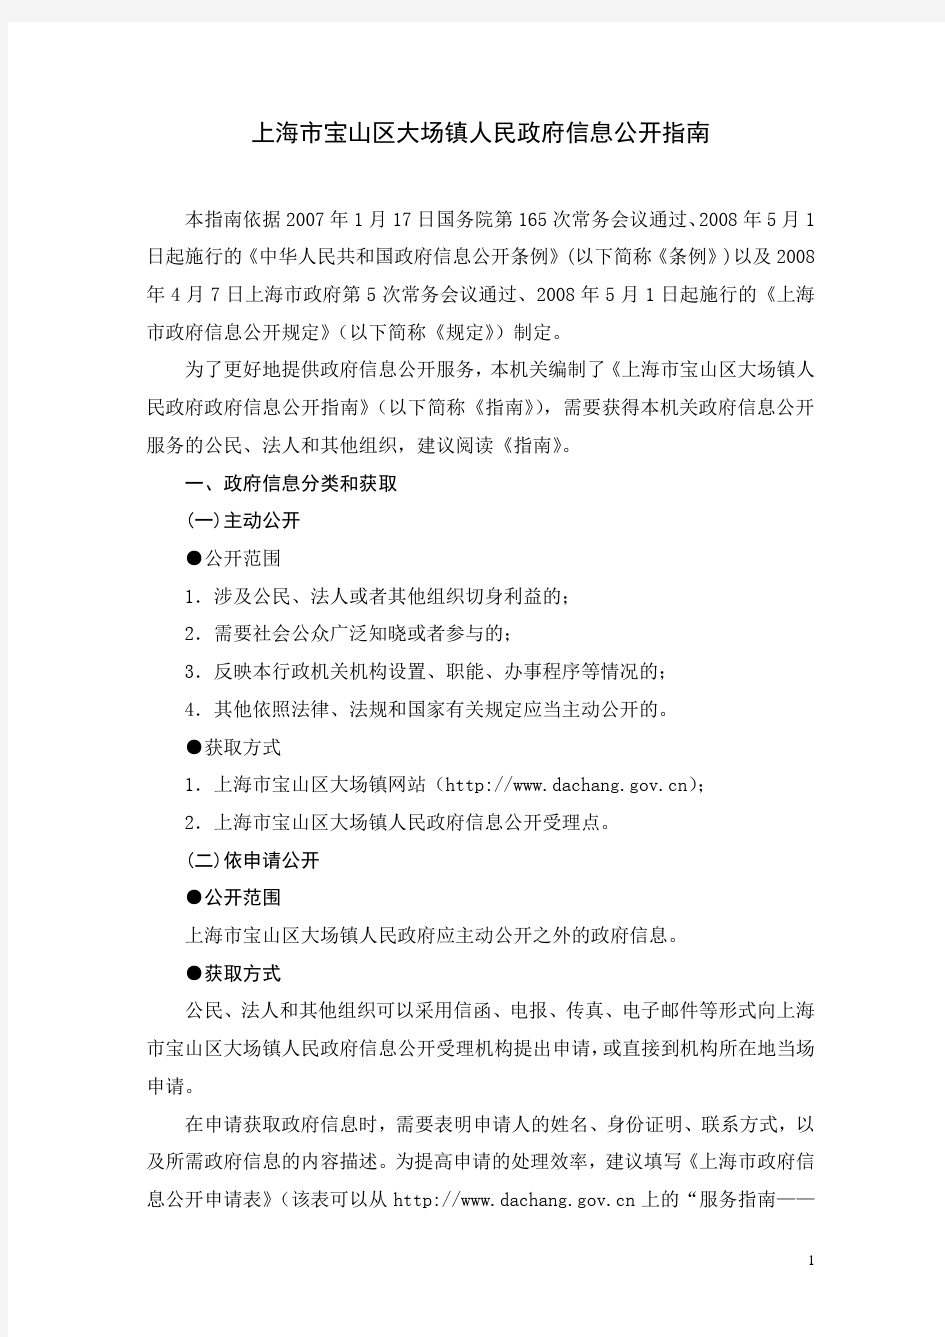 上海市宝山区大场镇人民政府信息公开指南